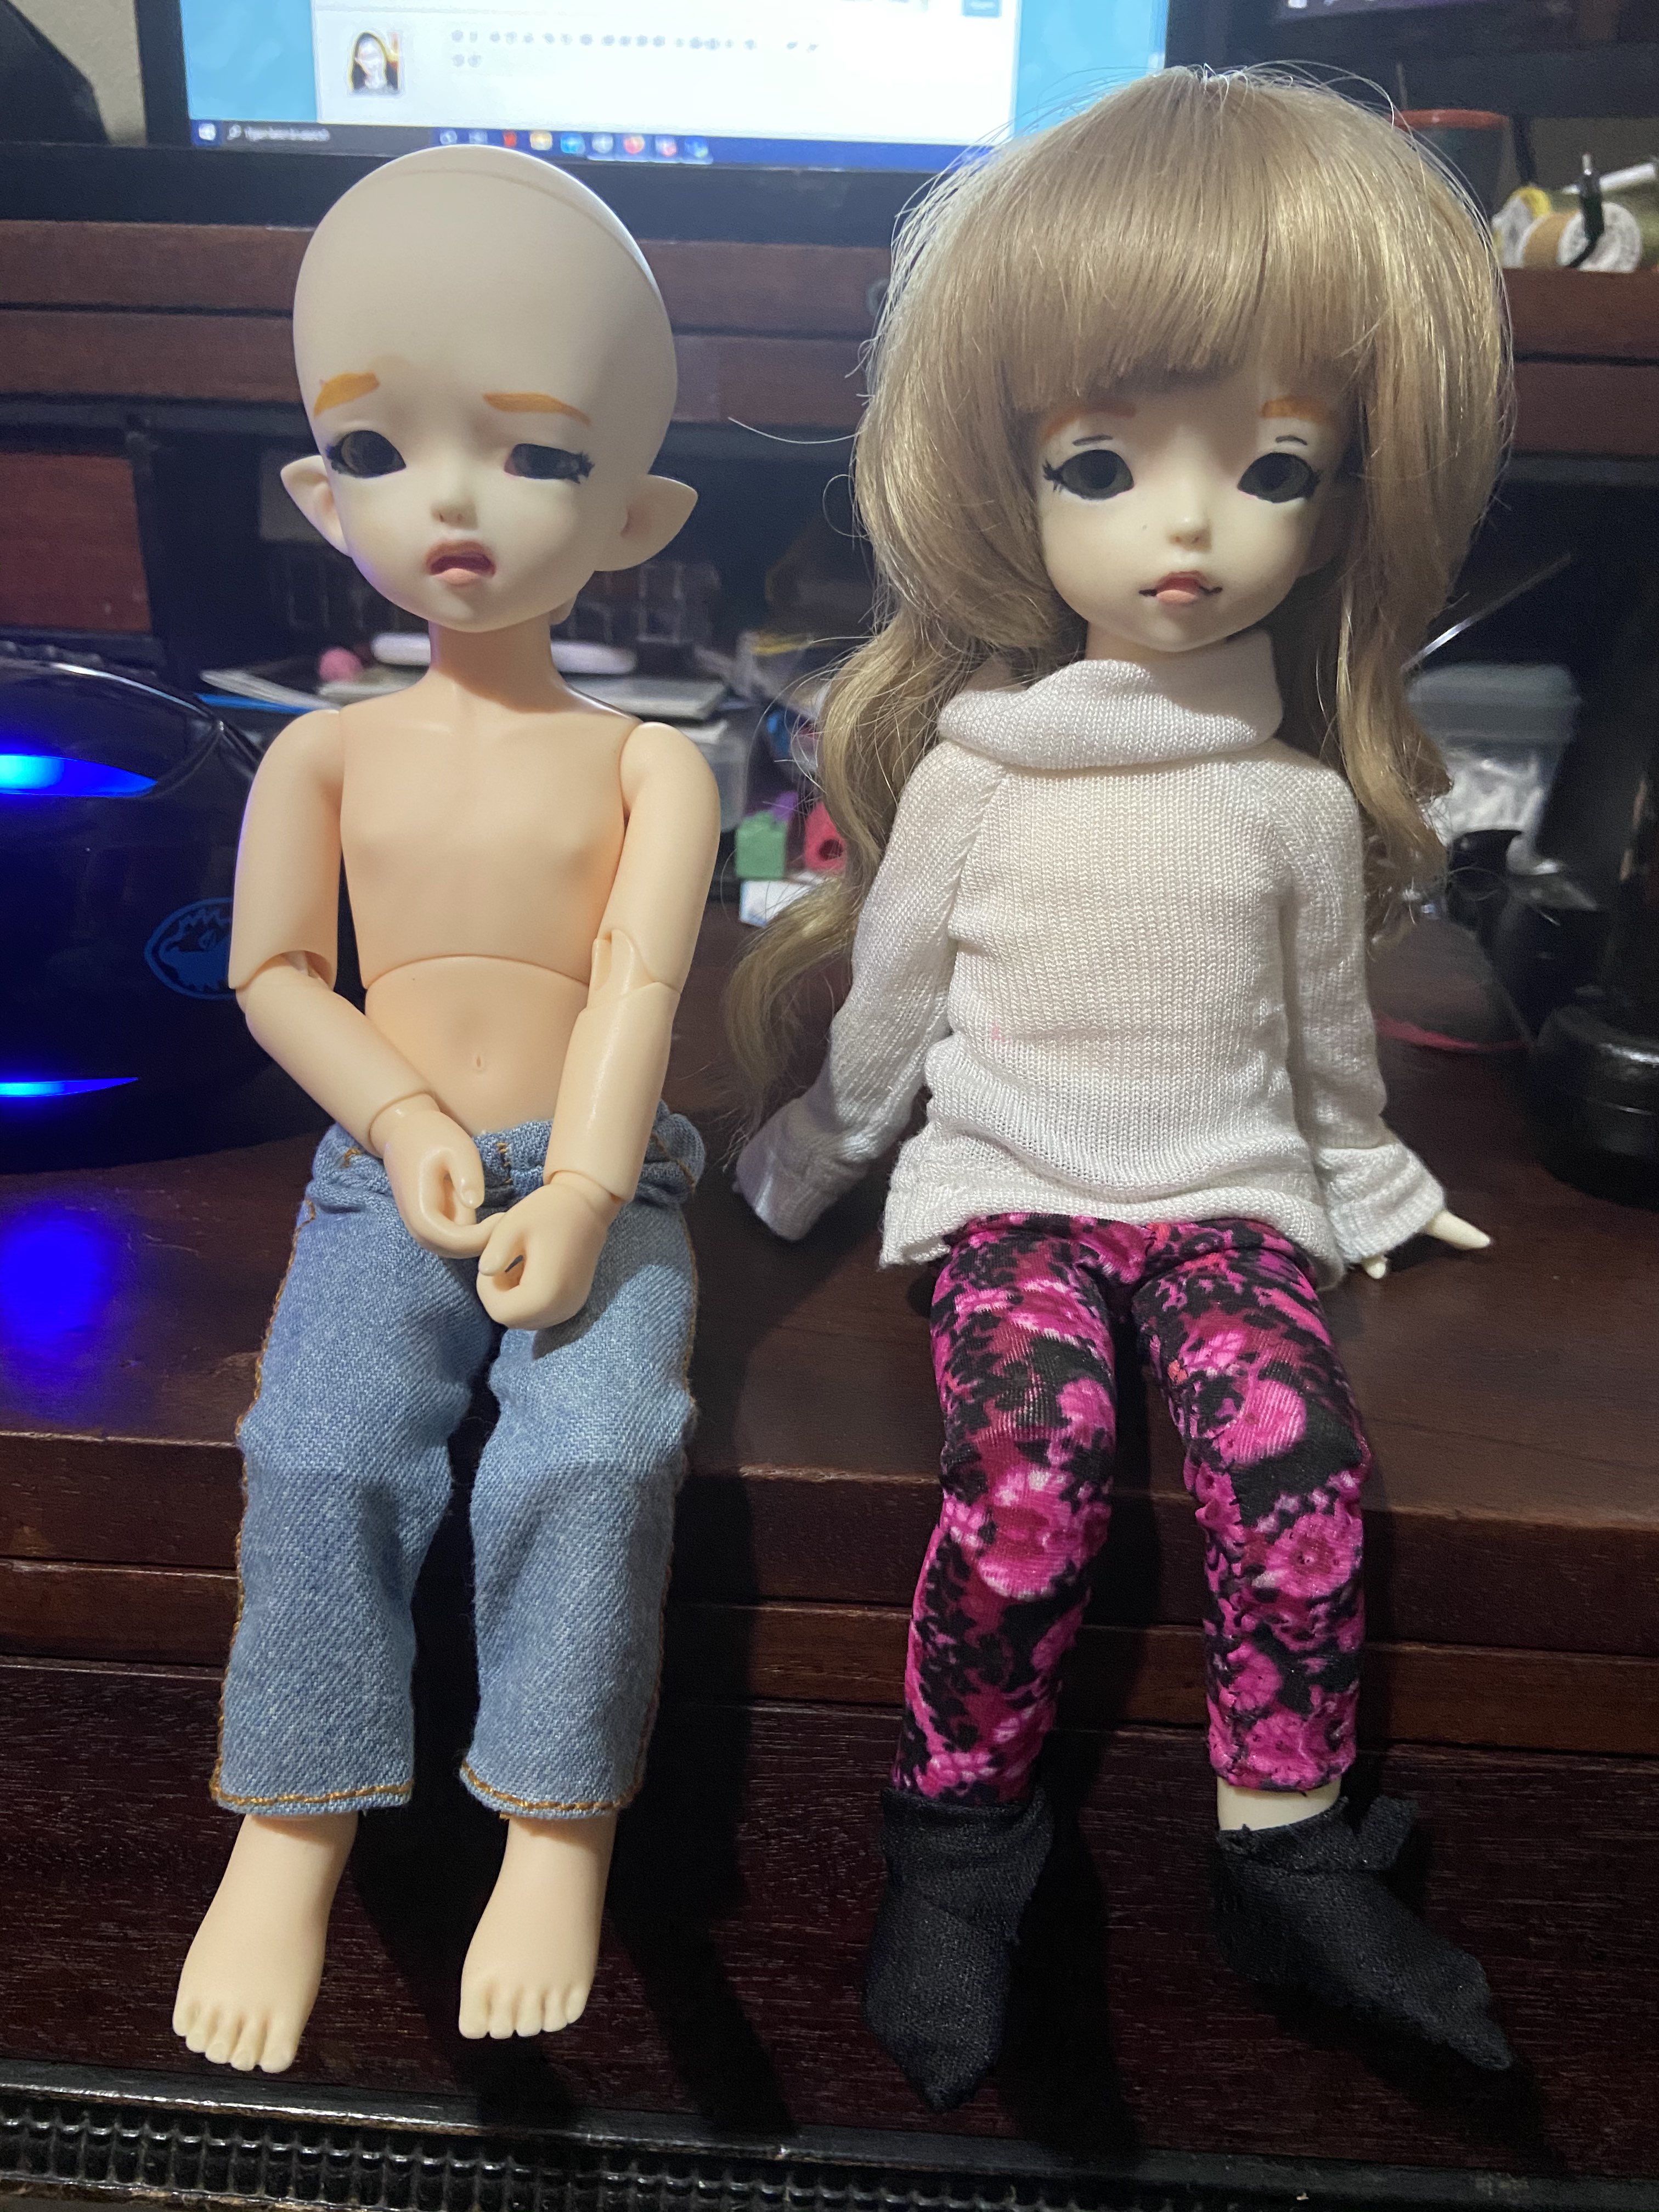 My YoSD sized dolls, Lukas and Lucrezia